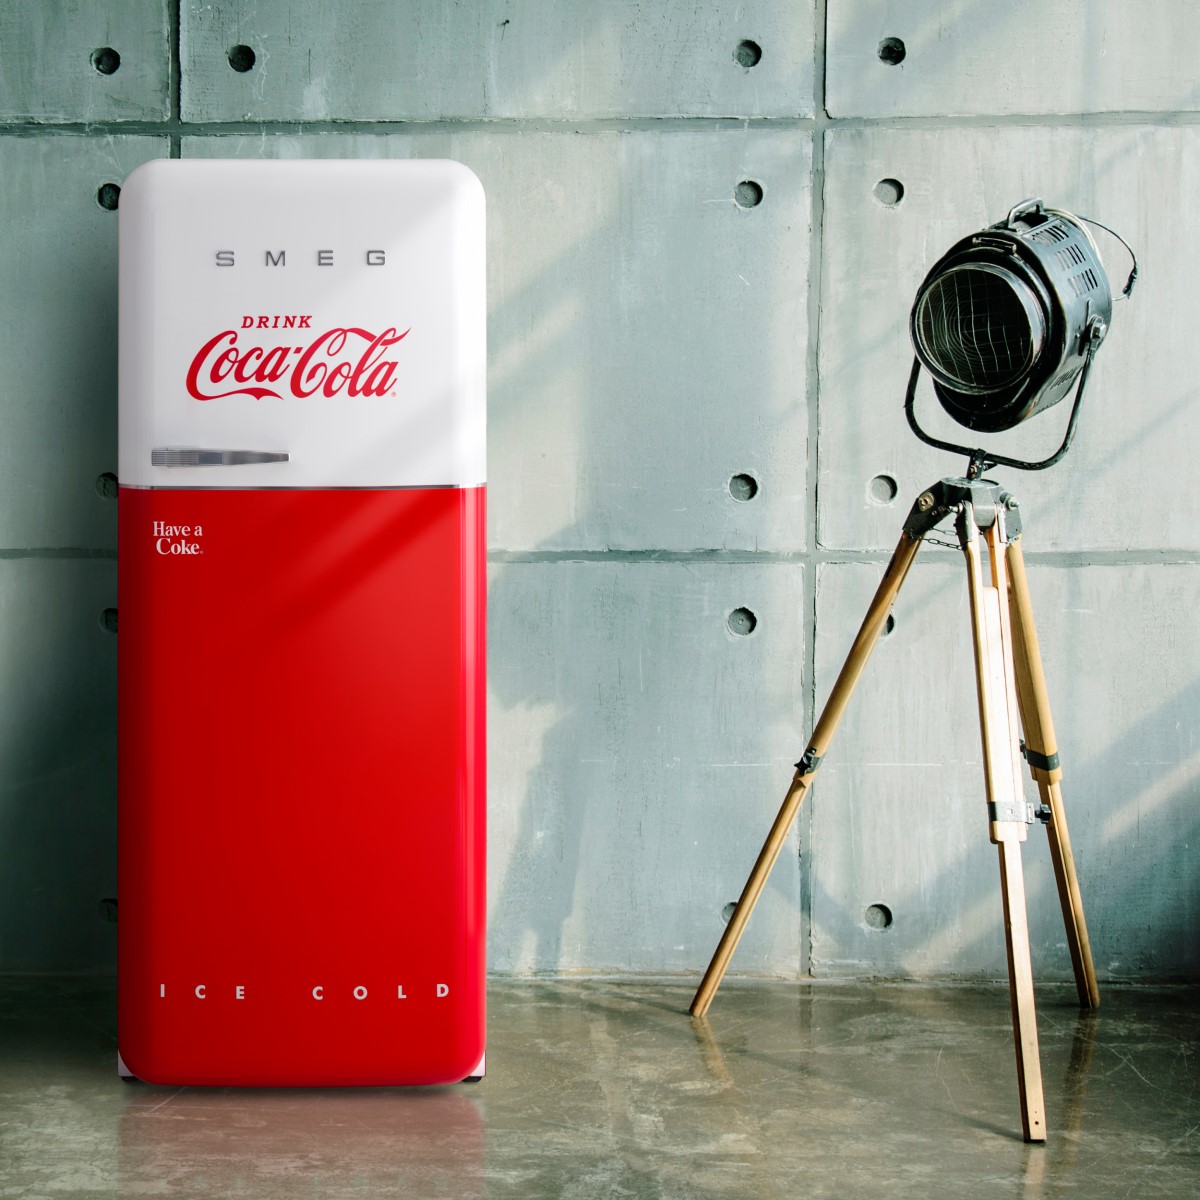 Ecologie Hardheid duizend De iconische koelkast van Smeg in een Coca-Cola jasje